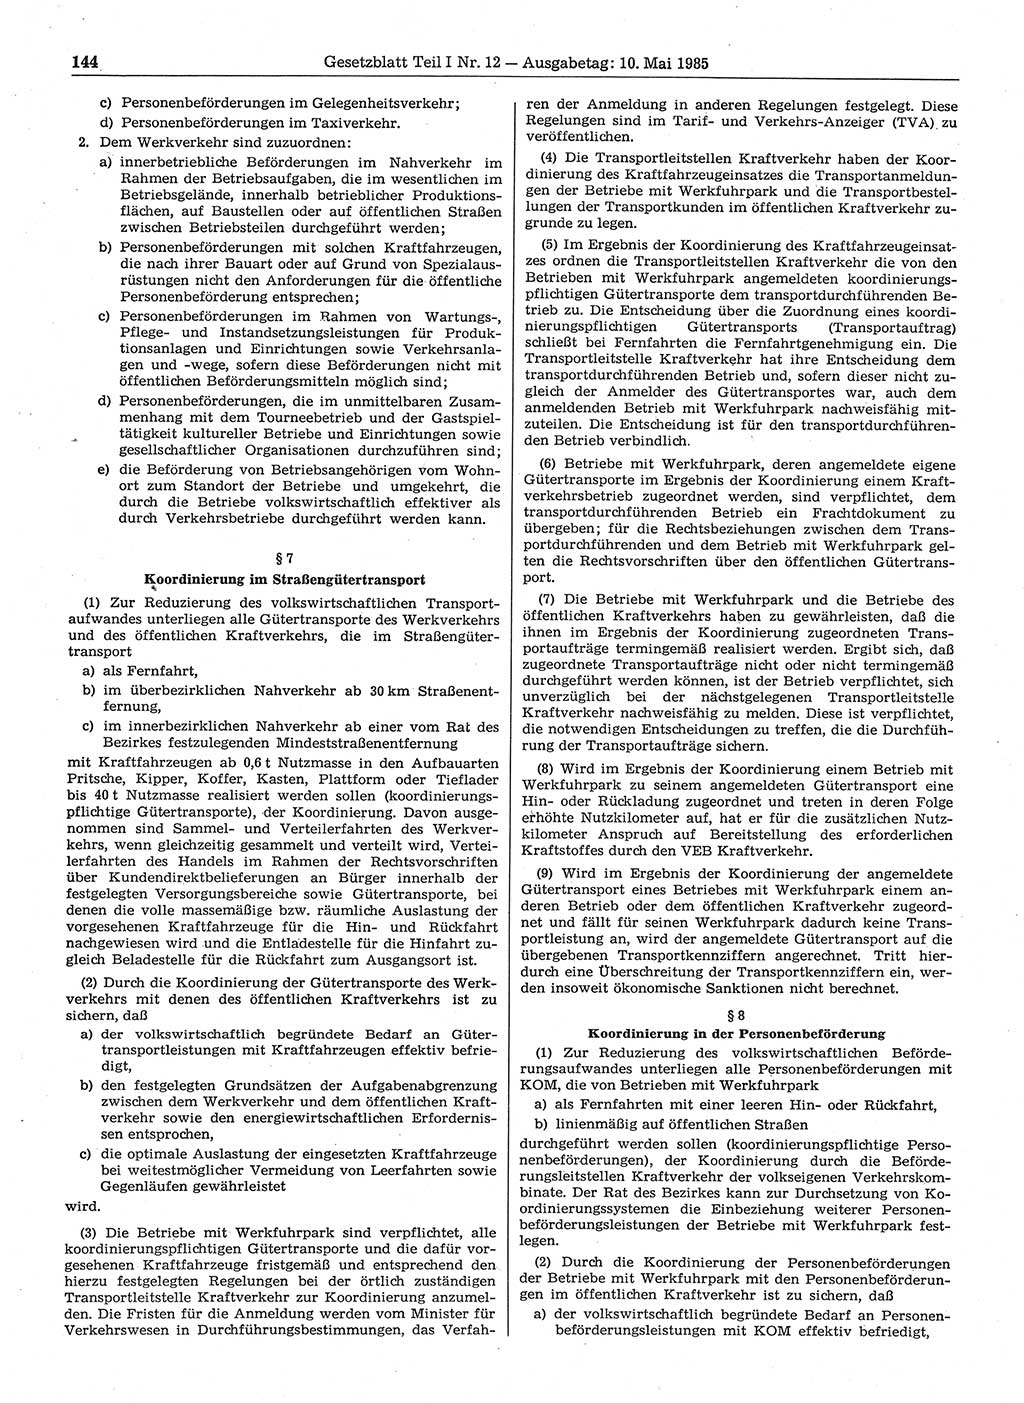 Gesetzblatt (GBl.) der Deutschen Demokratischen Republik (DDR) Teil Ⅰ 1985, Seite 144 (GBl. DDR Ⅰ 1985, S. 144)